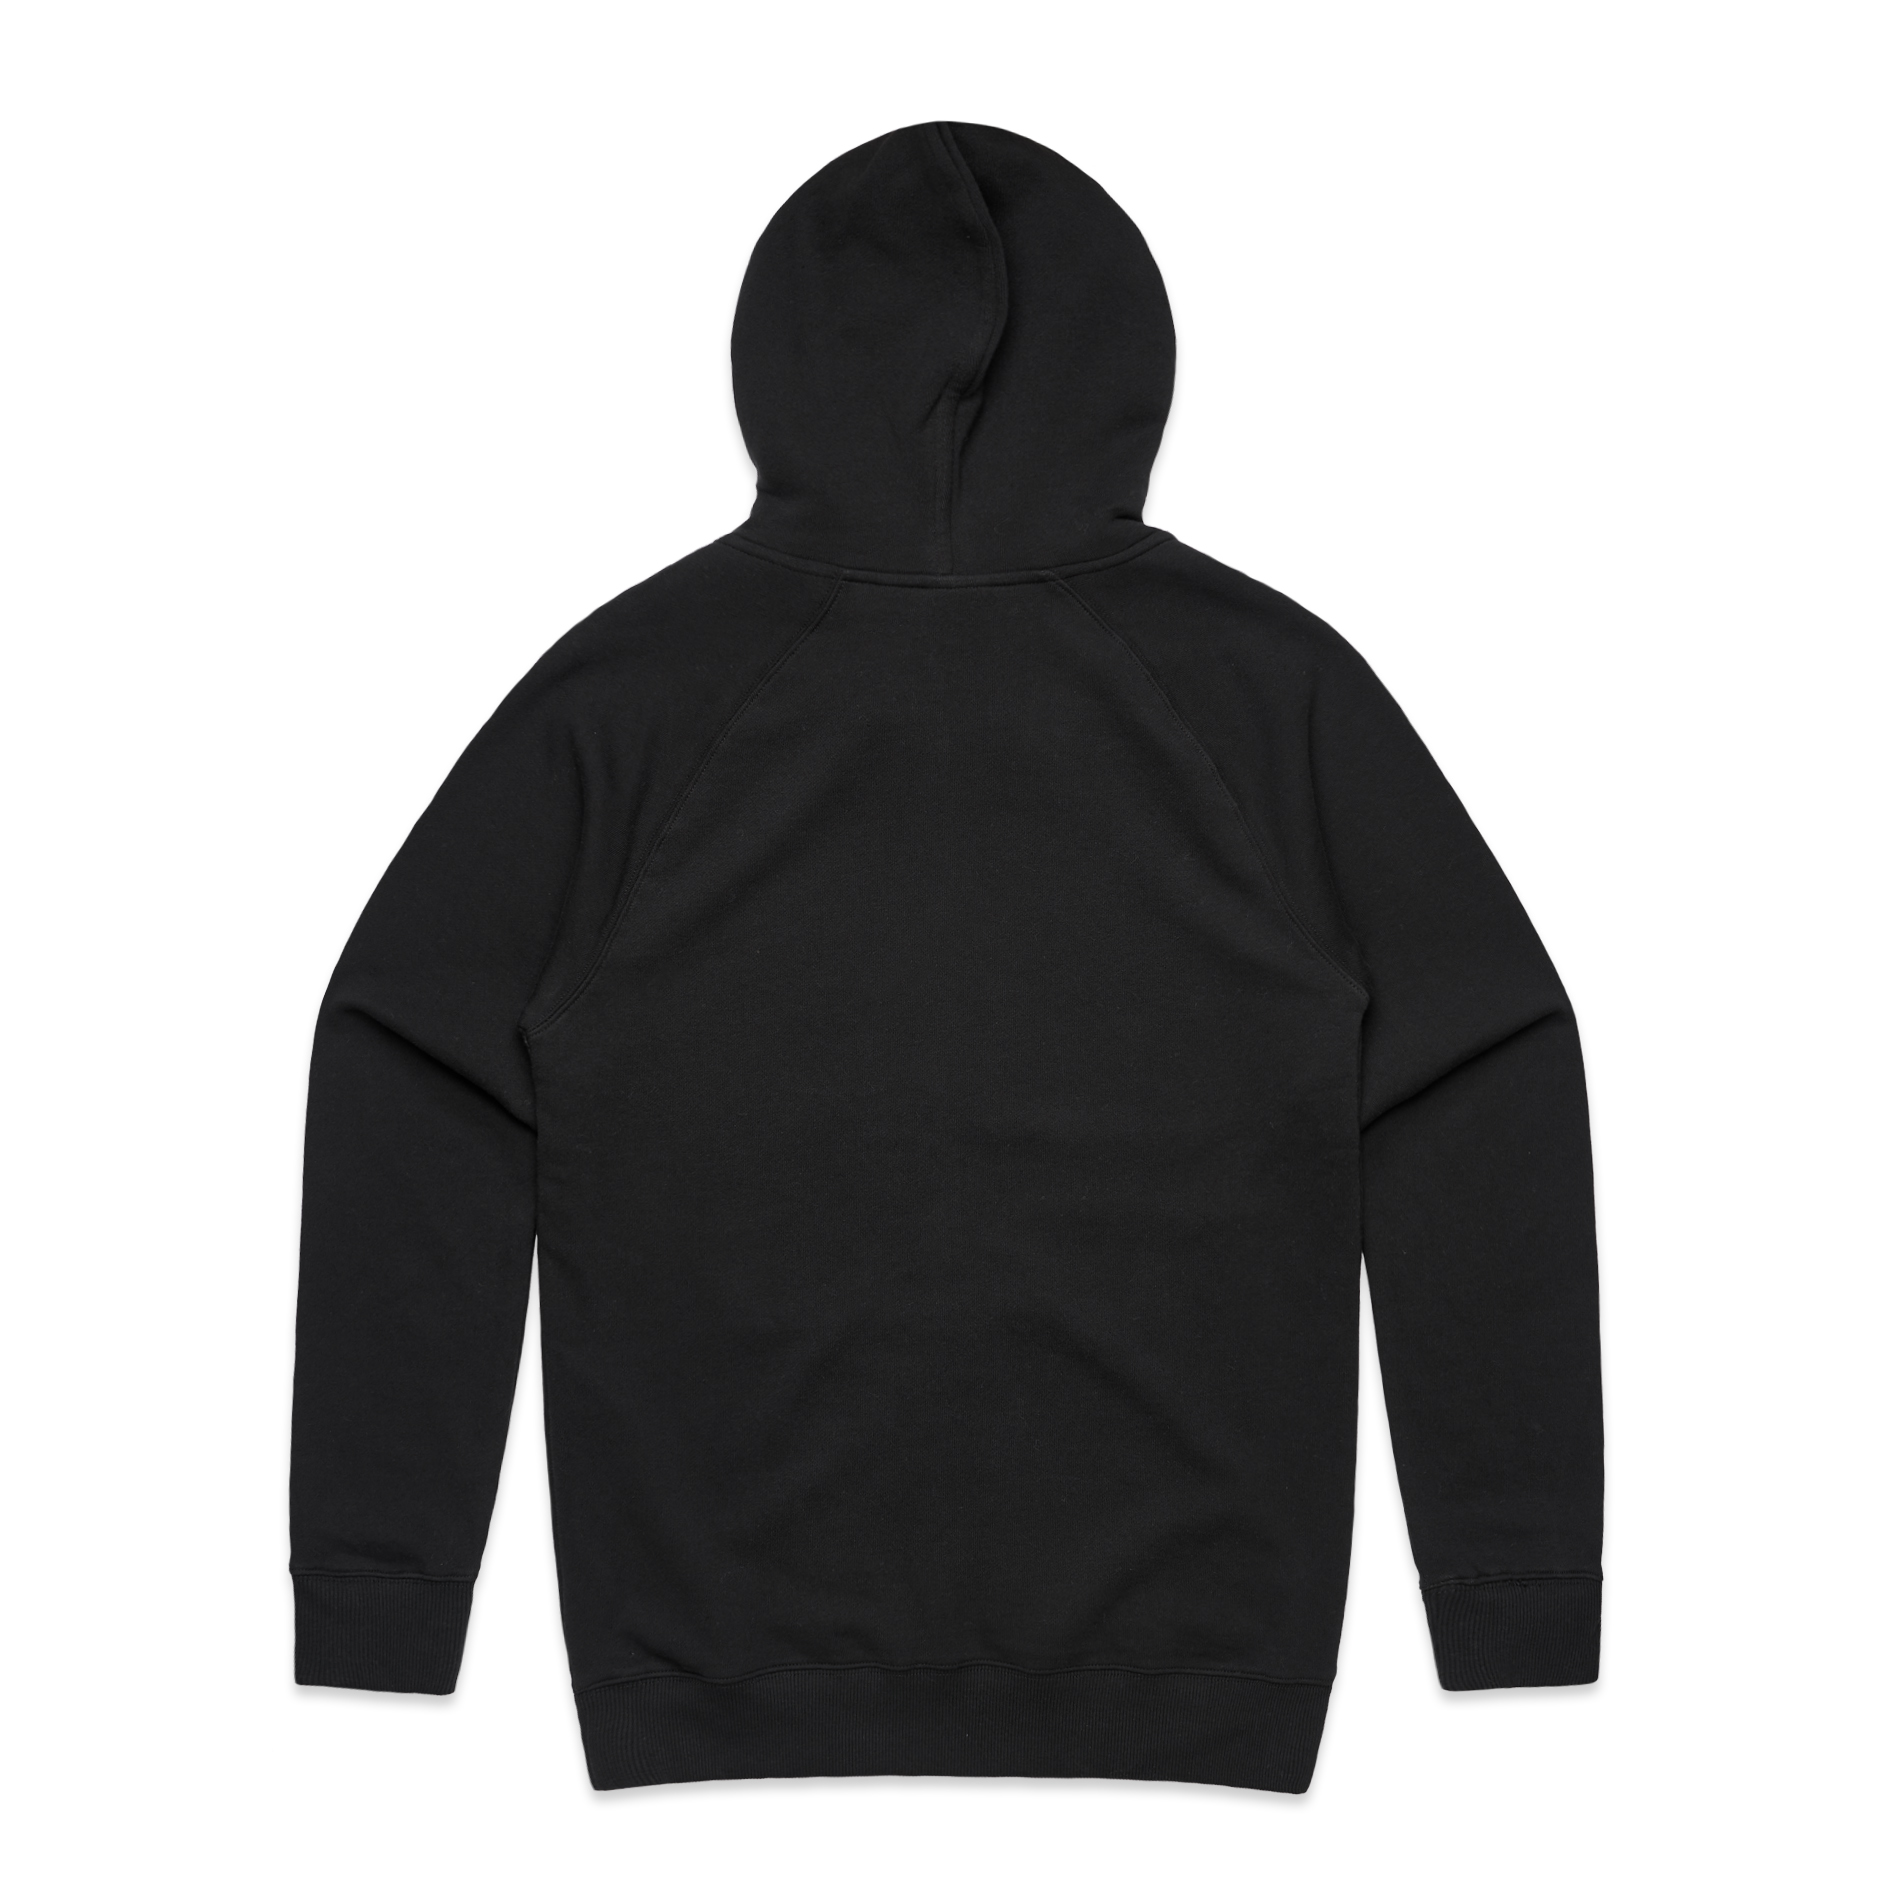 Men's Premium Zip Hood - Black 5122 - Uniform Edit